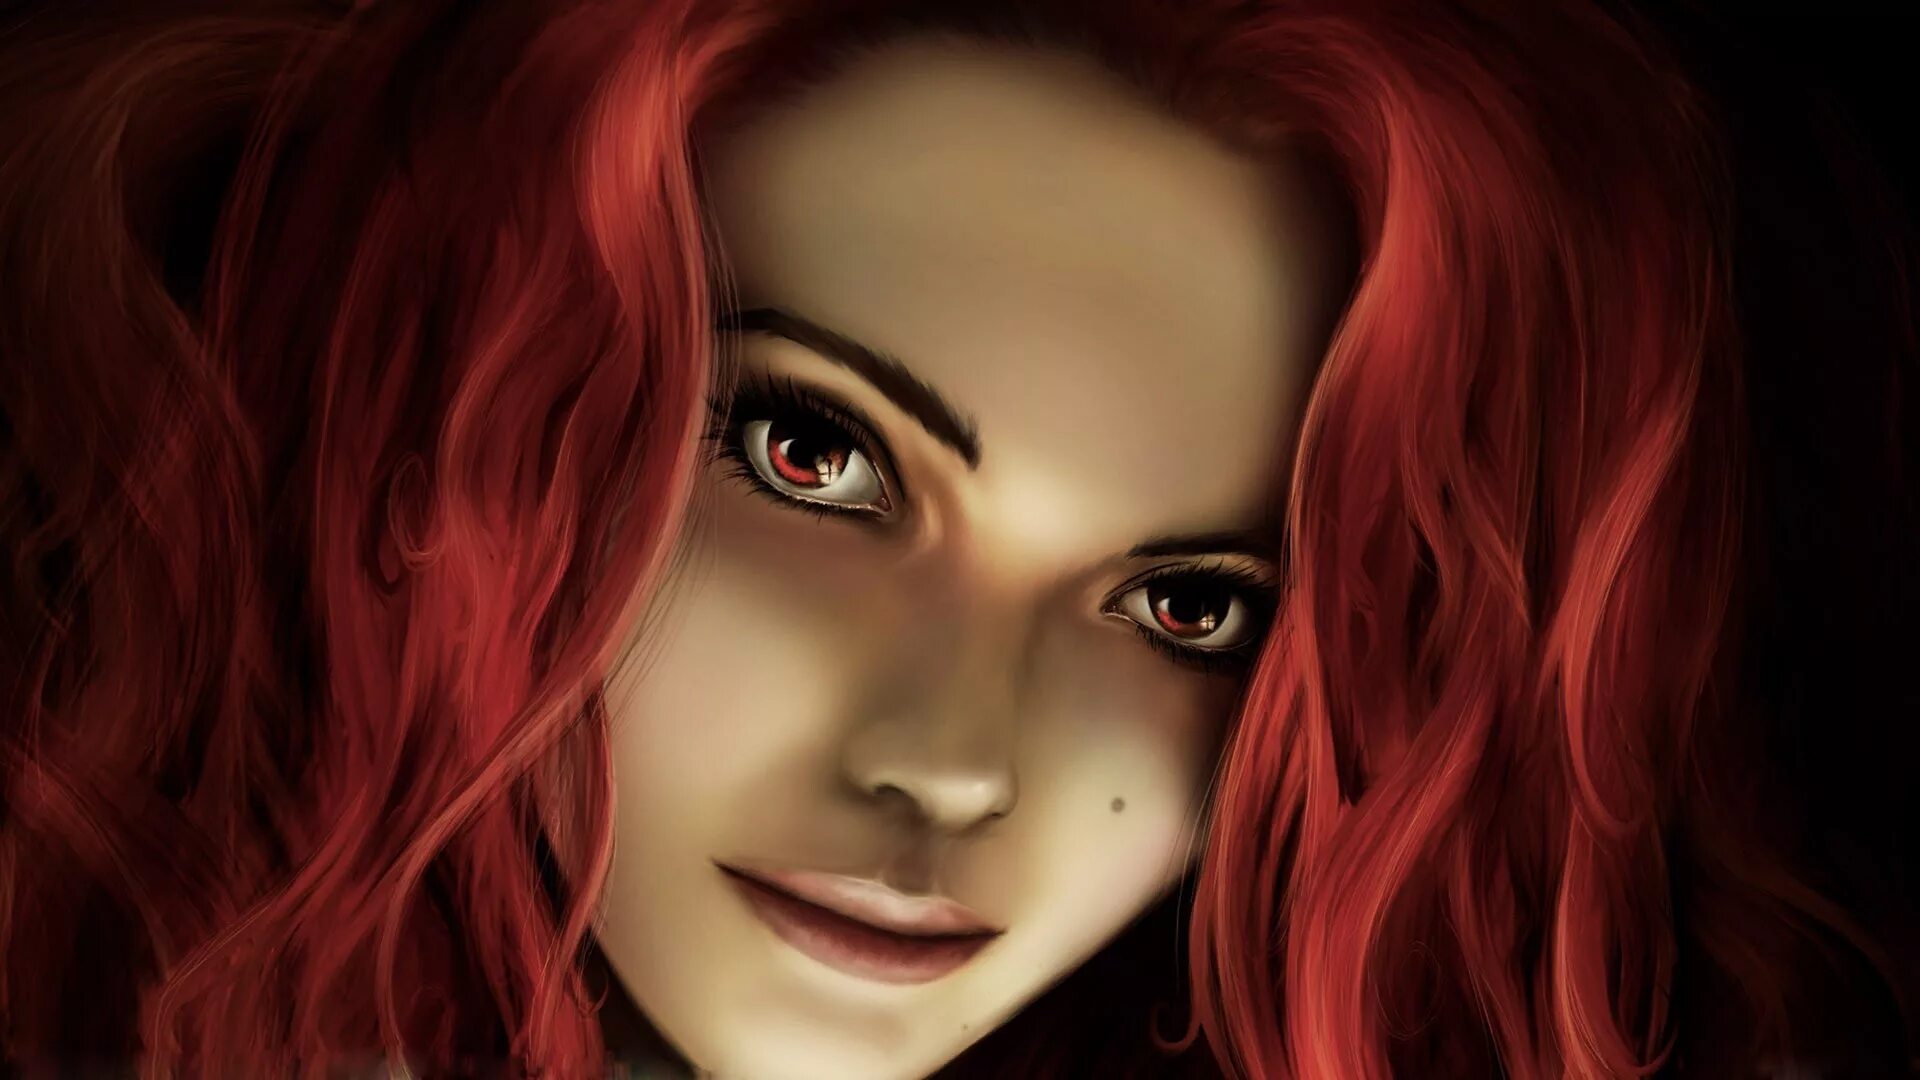 Рыжая девушка арт. Девушка с рыжими волосами арт. Девушка с рыжими волосами фэнтези.